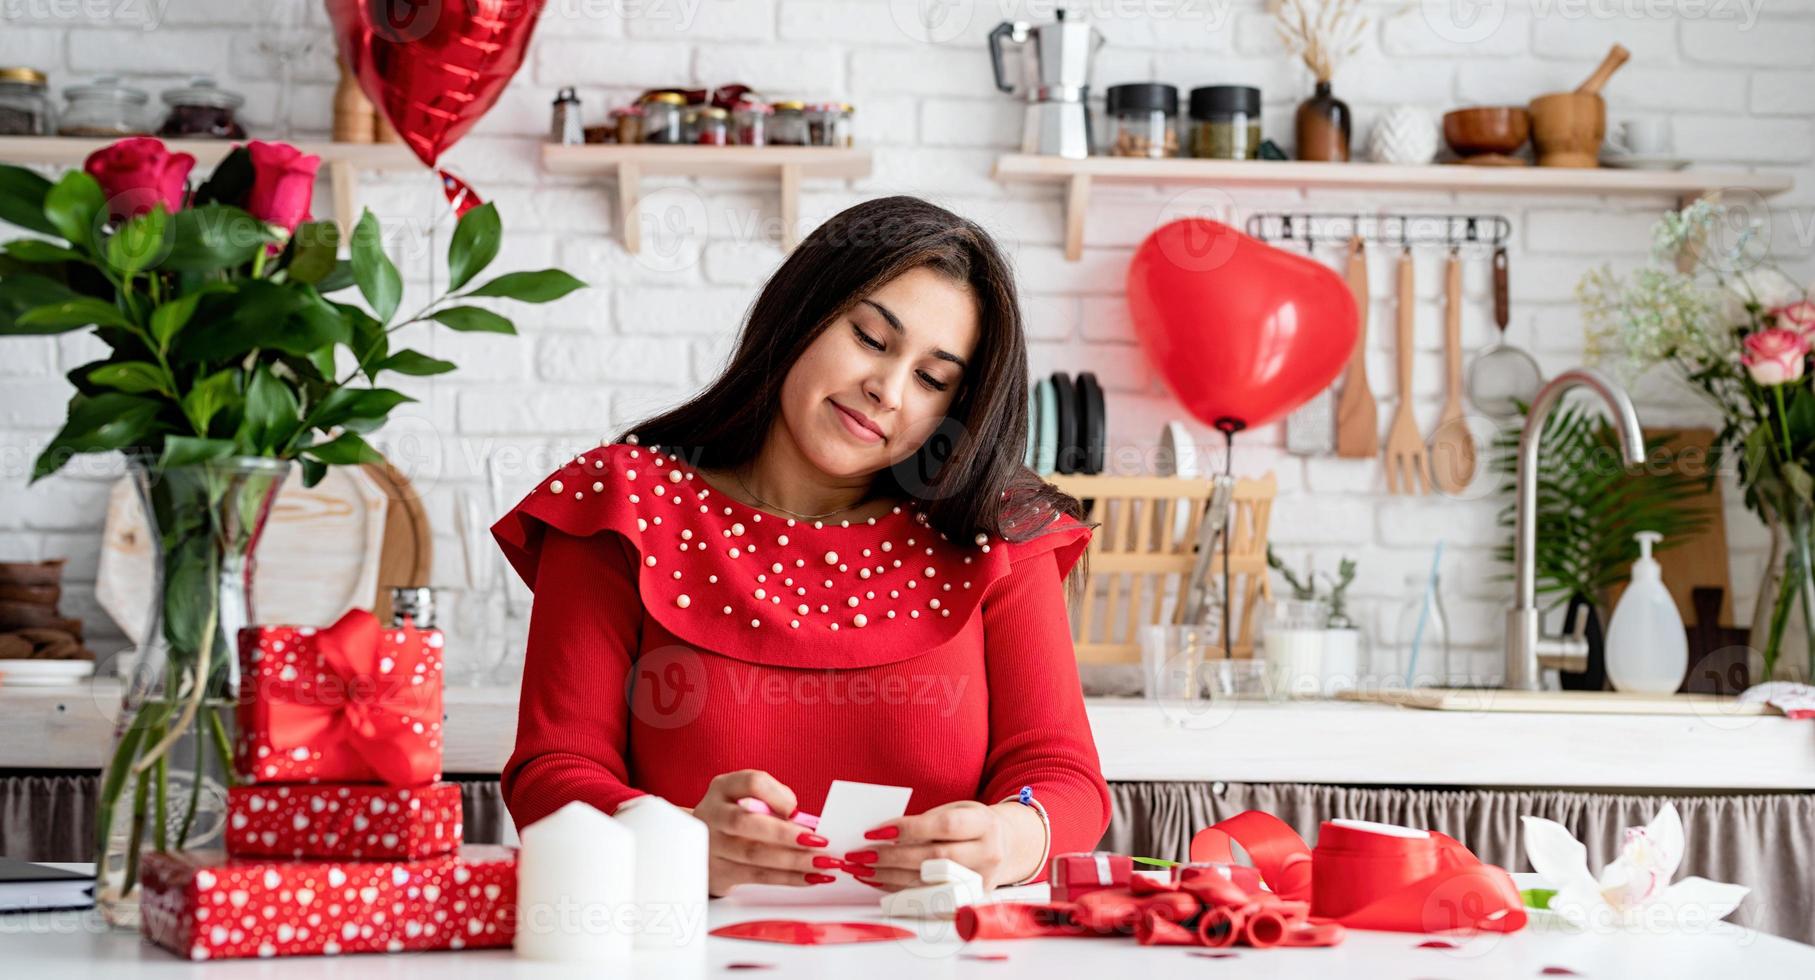 giovane donna che scrive una lettera d'amore seduta alla cucina decorata foto